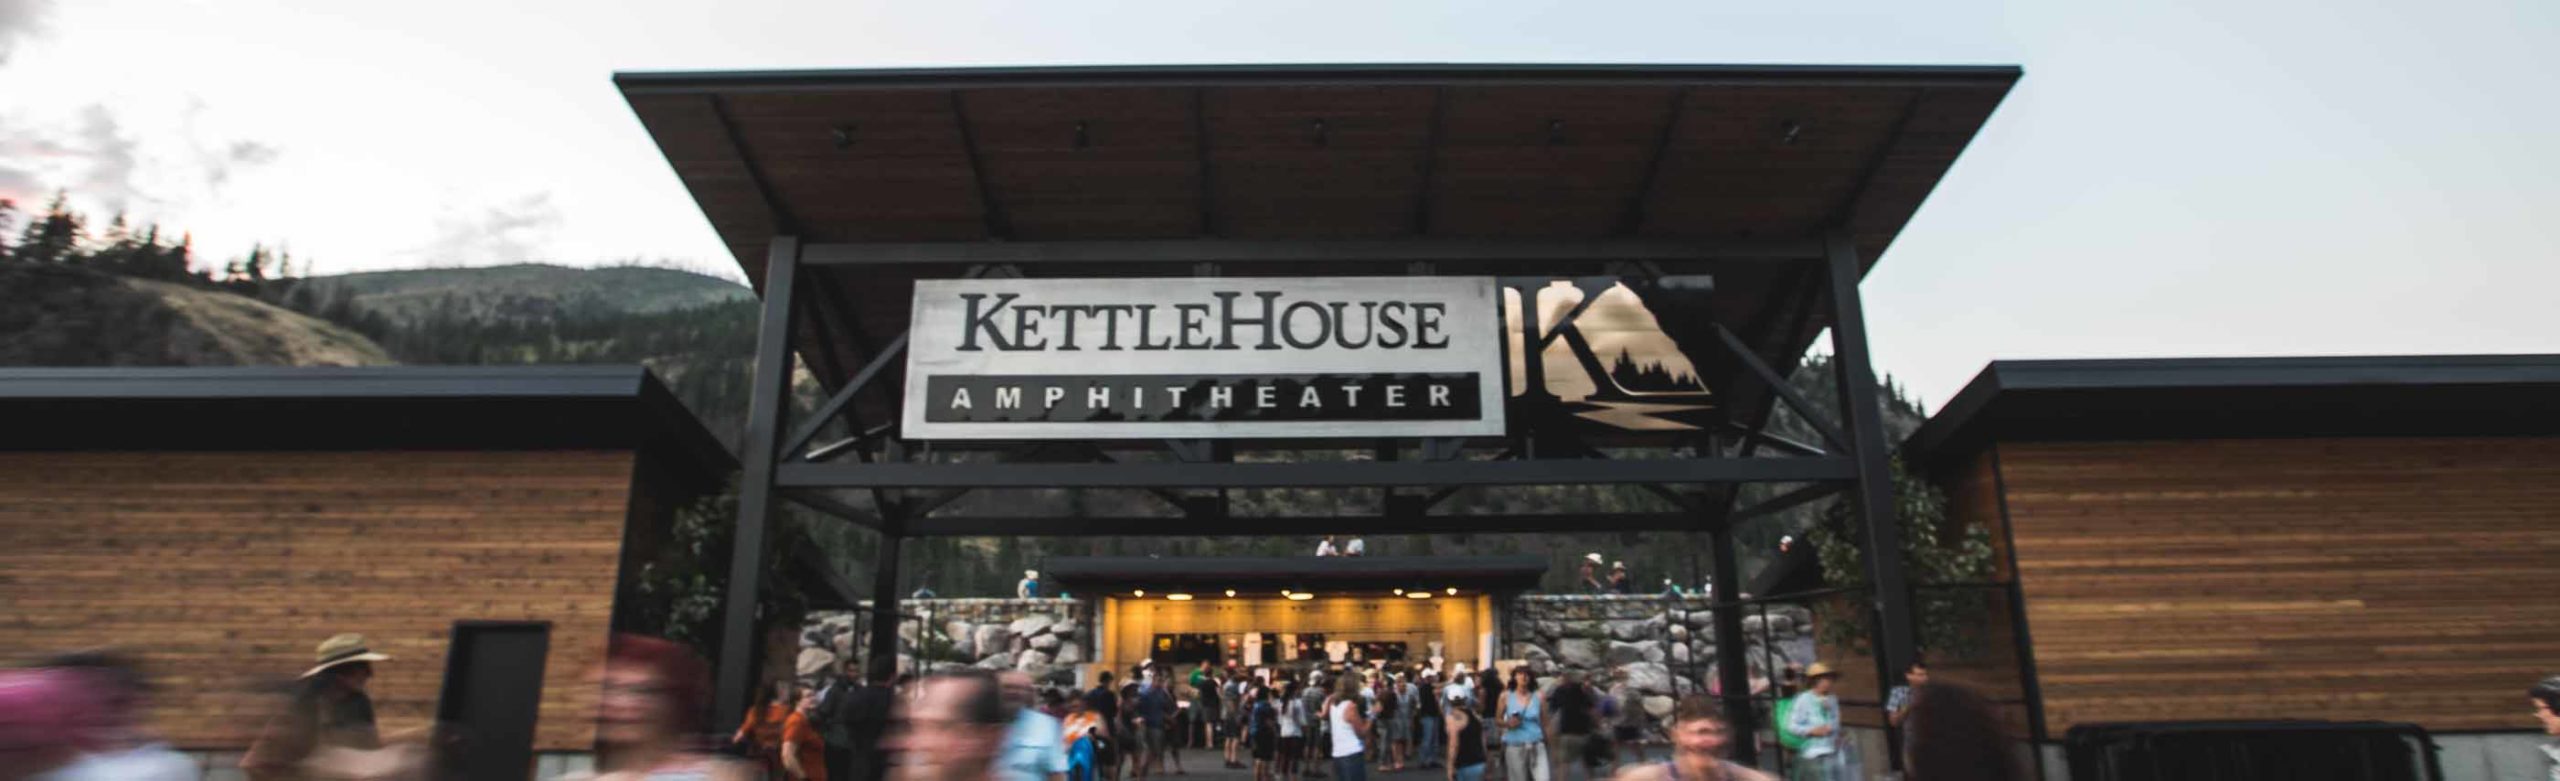 WATCH: KettleHouse Amphitheater 2017 Recap Video Image